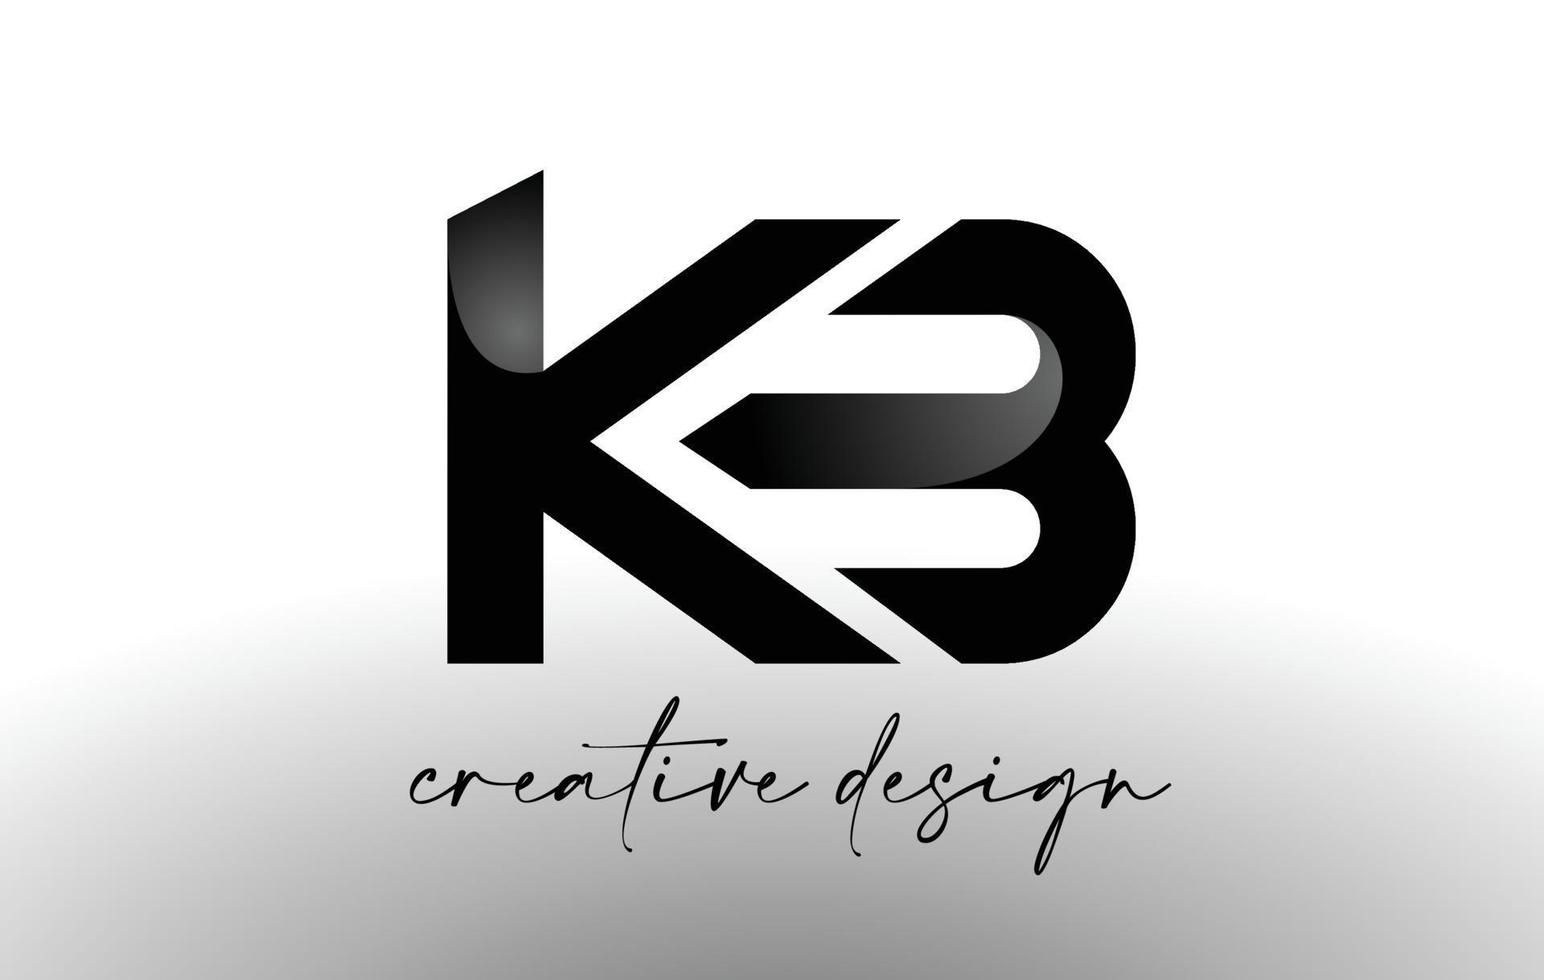 design de logotipo de letra kb com vetor de ícone elegante minimalista look.kb com aparência moderna de design criativo.